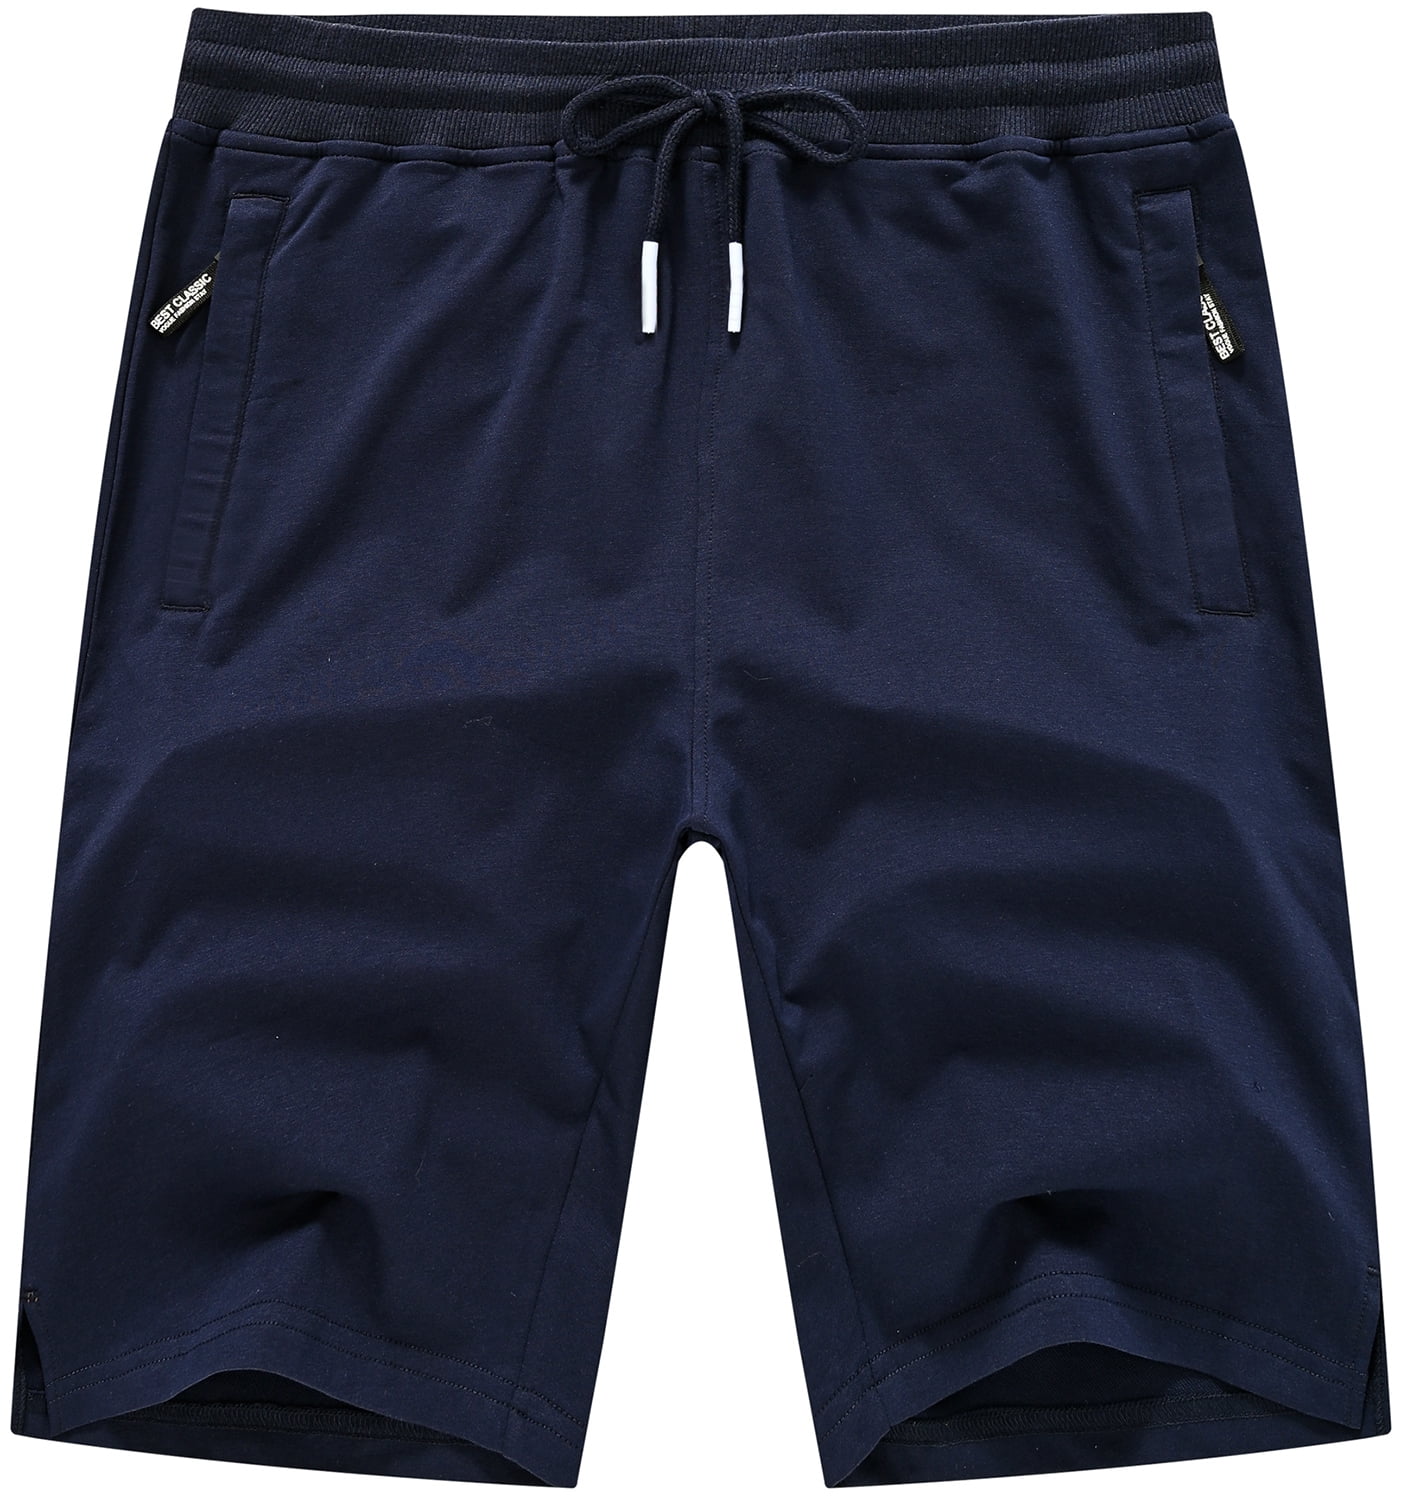 QPNGRP Men's Zipper Pockets Elastic Stretch Waist Workout Casual Shorts 